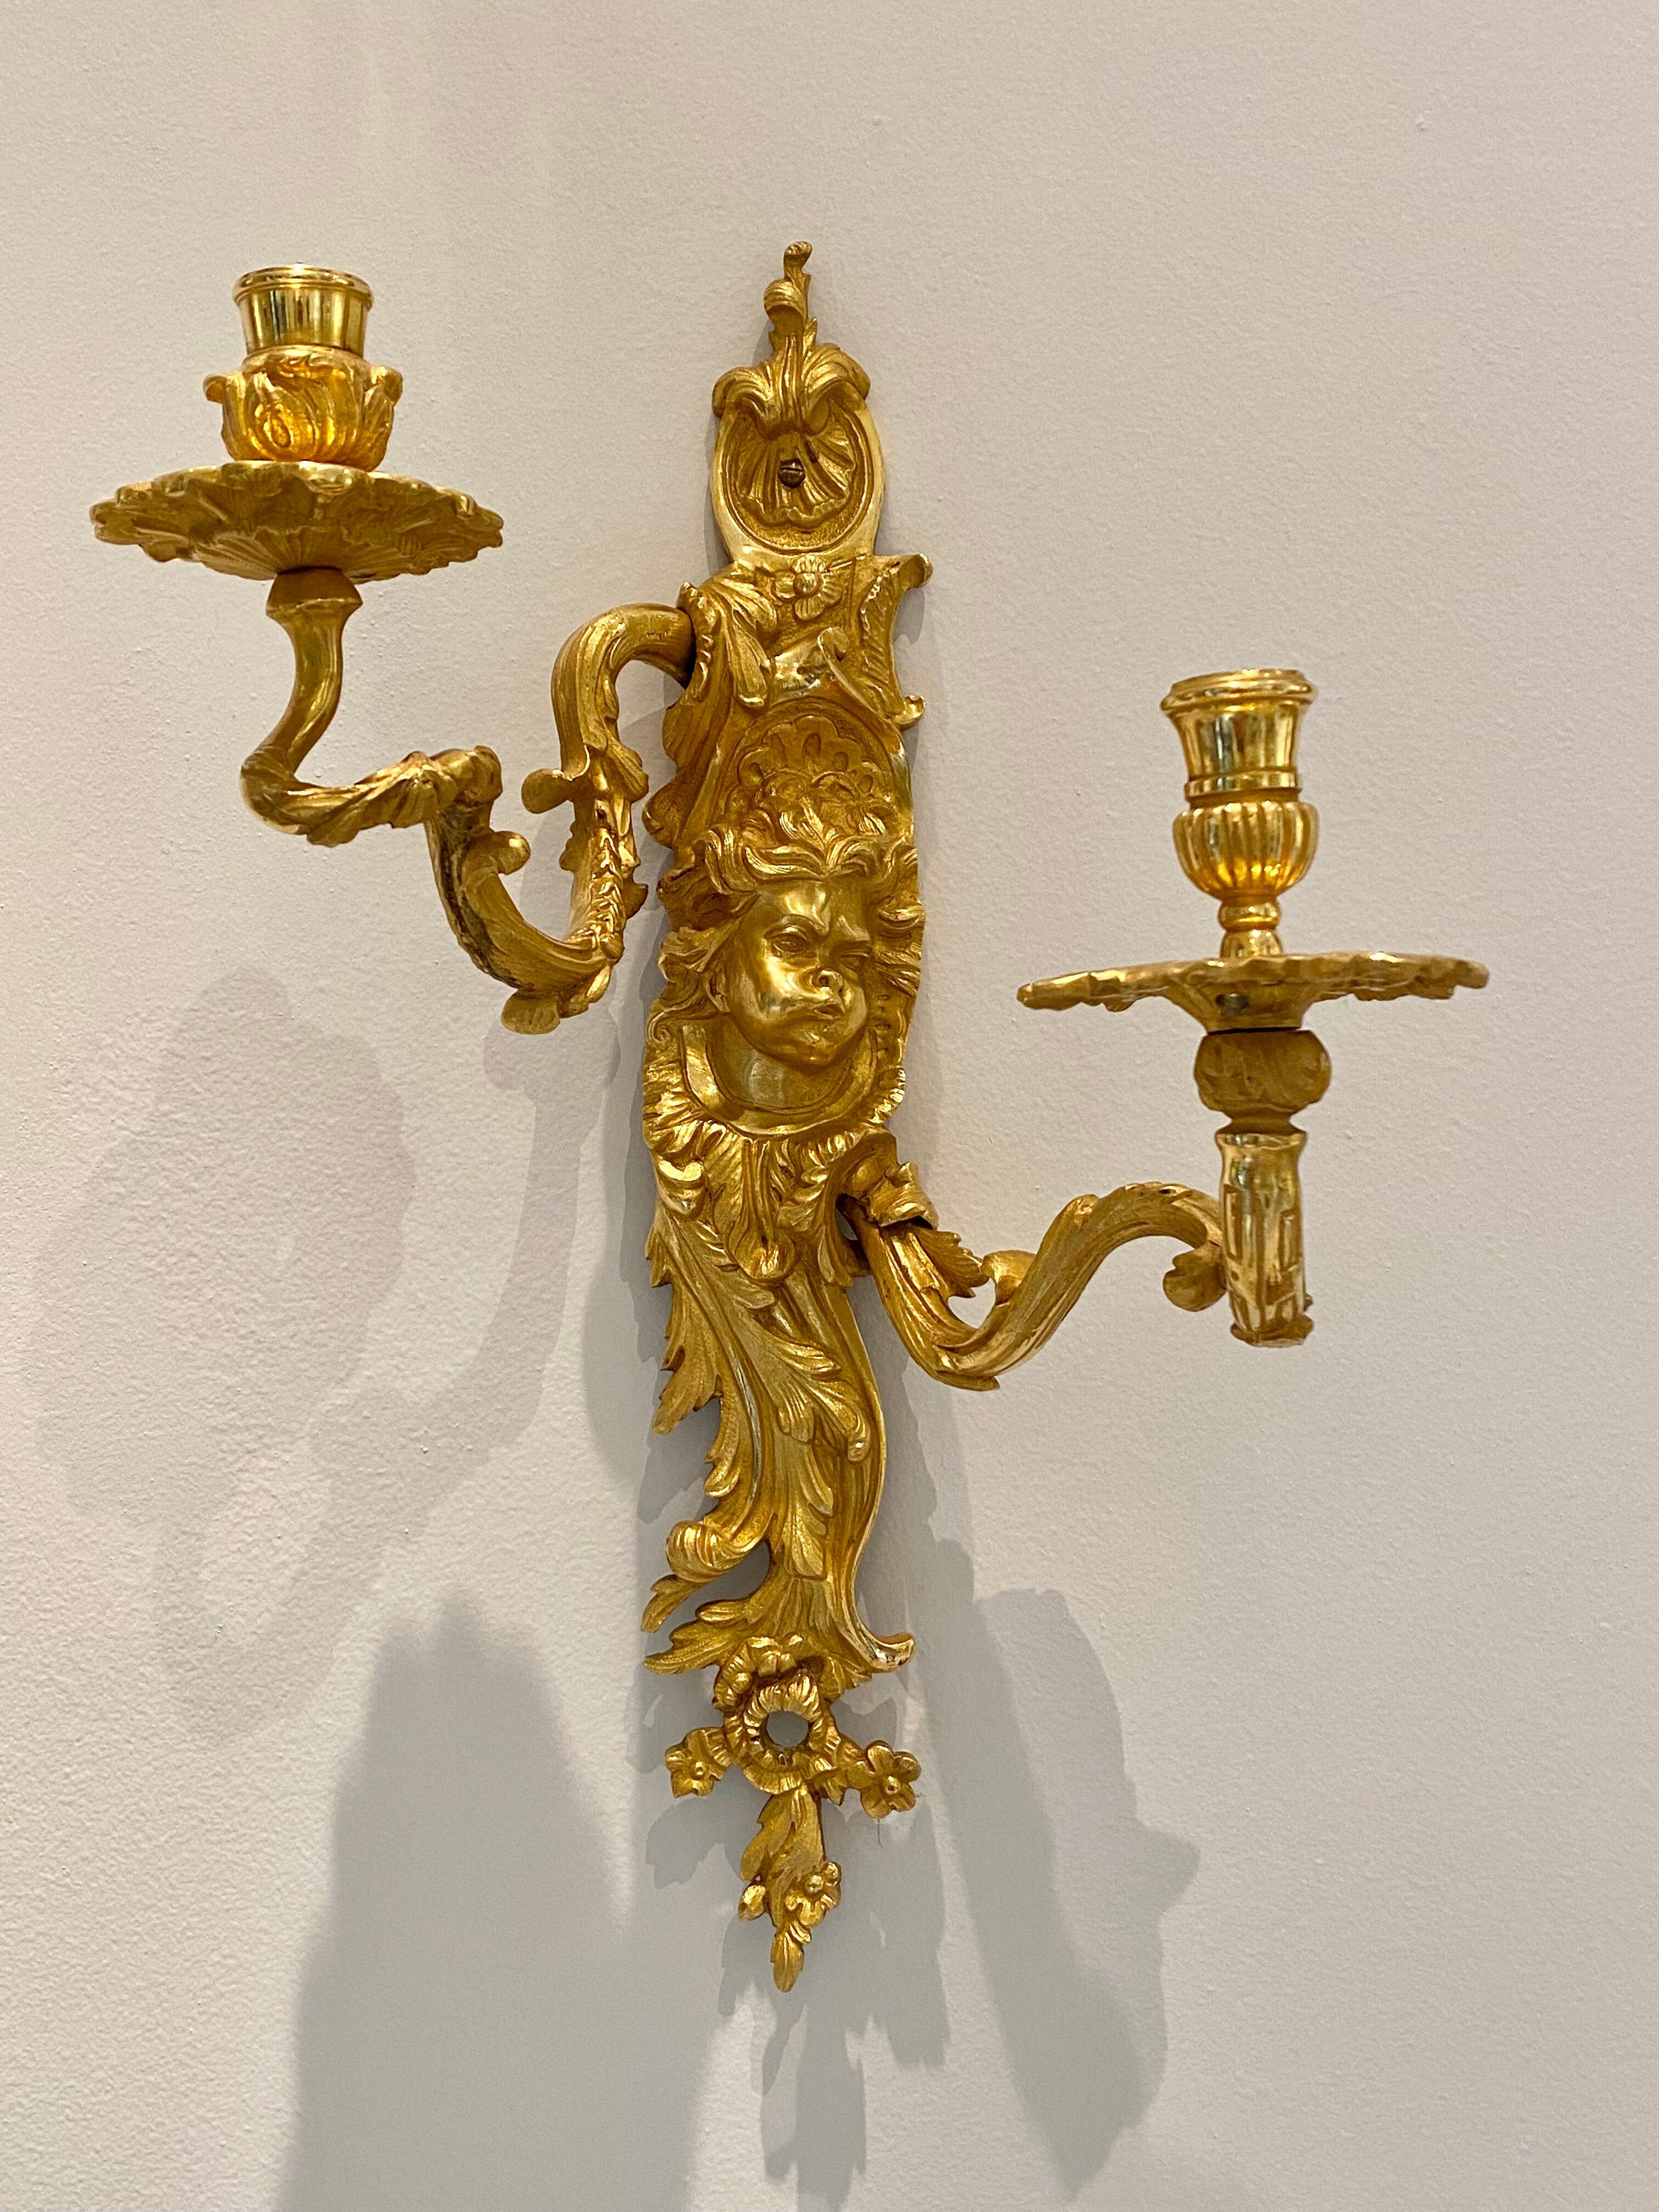 Feines Paar vergoldetes und skulptiertes Ormolu  Bronzewandleuchter im Louis XV-Stil. Sie haben jeweils zwei Arme, die sich vom Stamm aus wie Äste nach oben winden. Jeder Stiel ist reich verziert mit verschlungenen Blättern, Muscheln, Blumen und